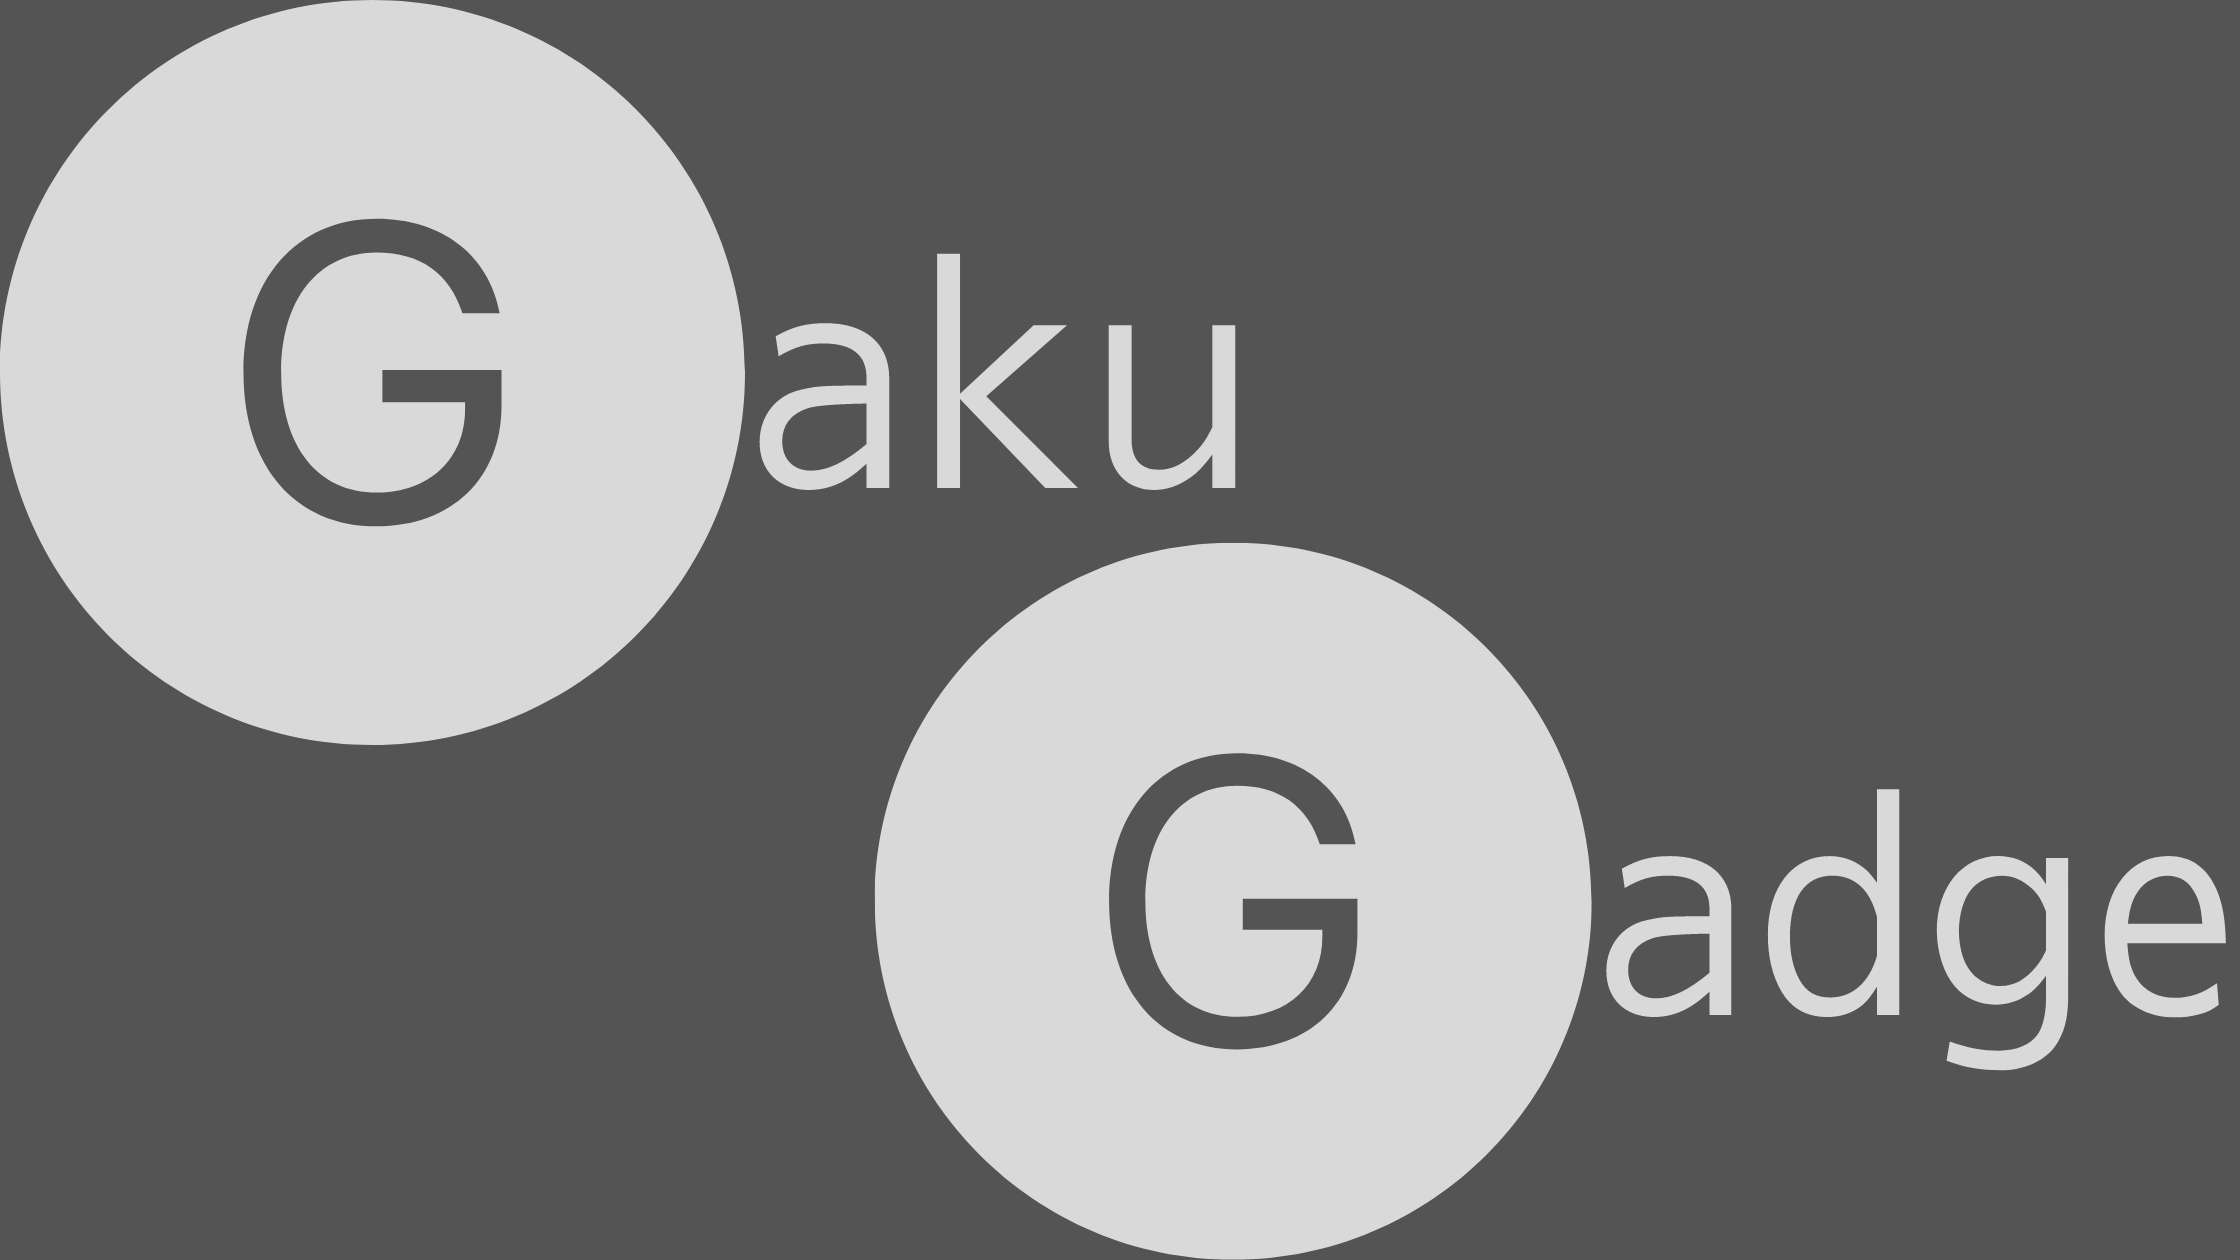 GakuGadge（ガクガジェ）